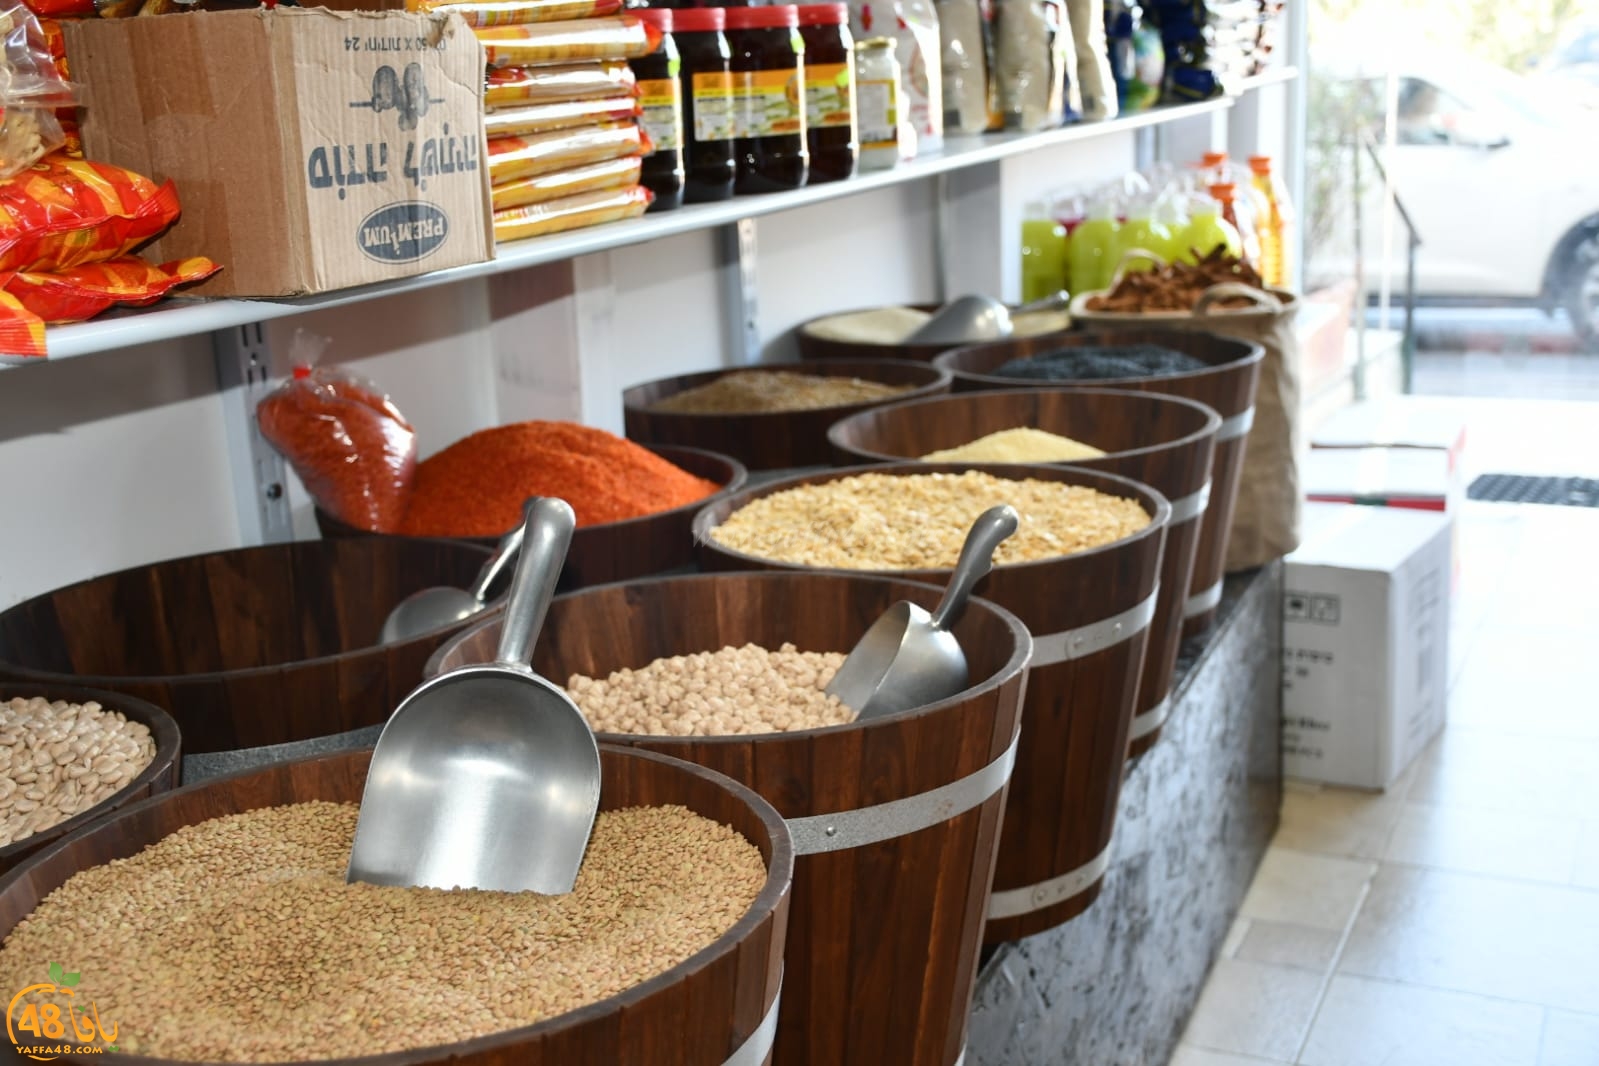  يافا: انتقال محل الزهراء للعطارة والمواد الغذائية الى شارع ييفت 92 